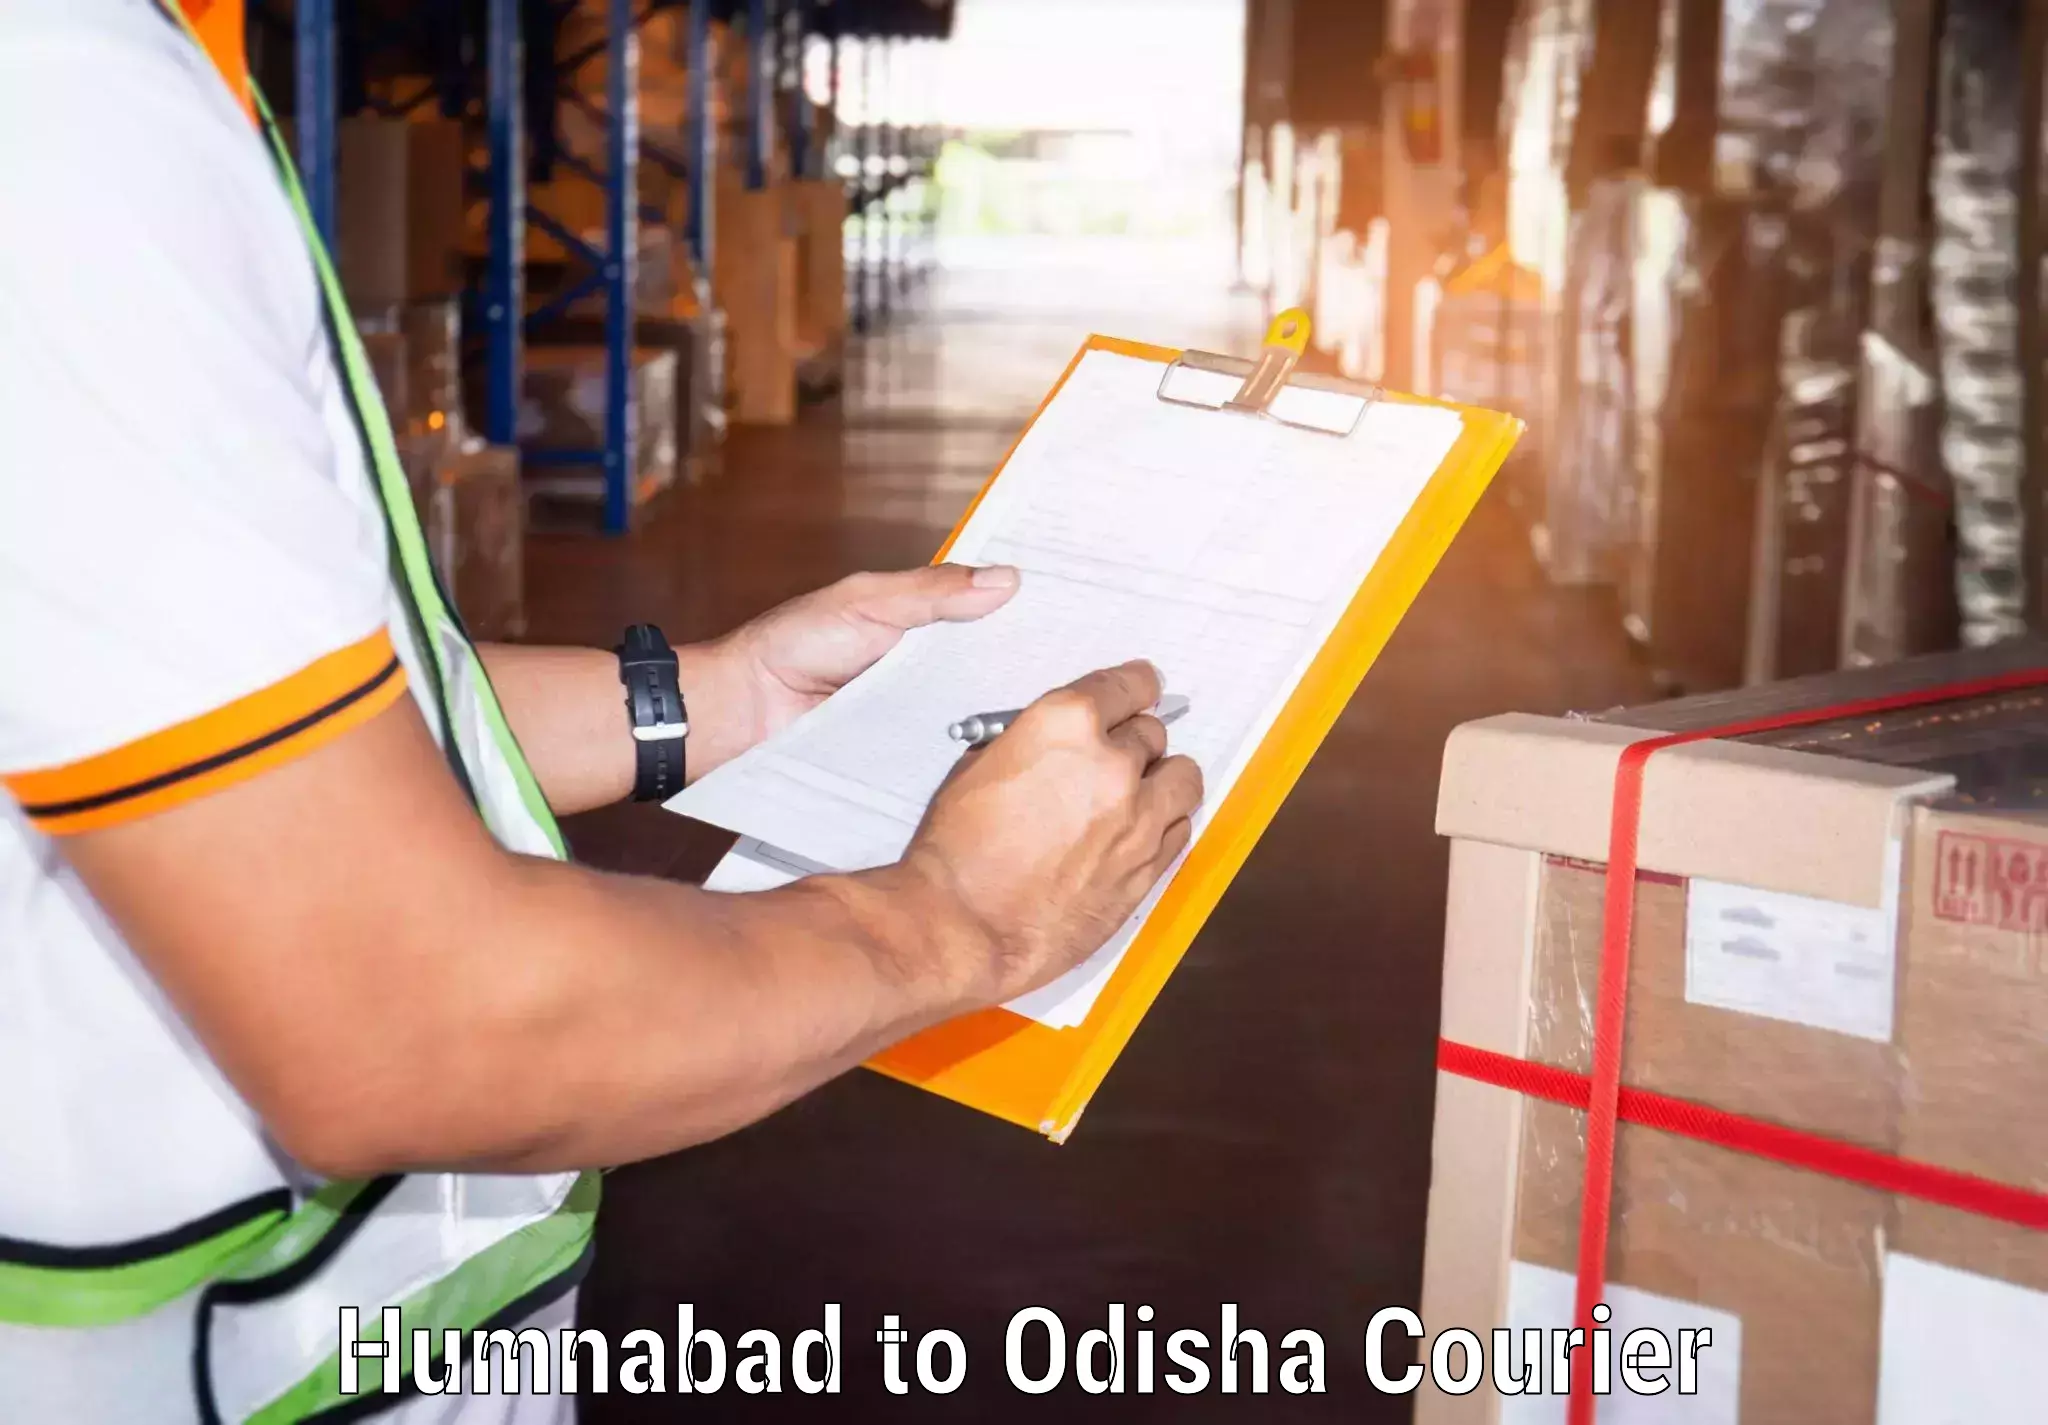 Logistics service provider Humnabad to Komana